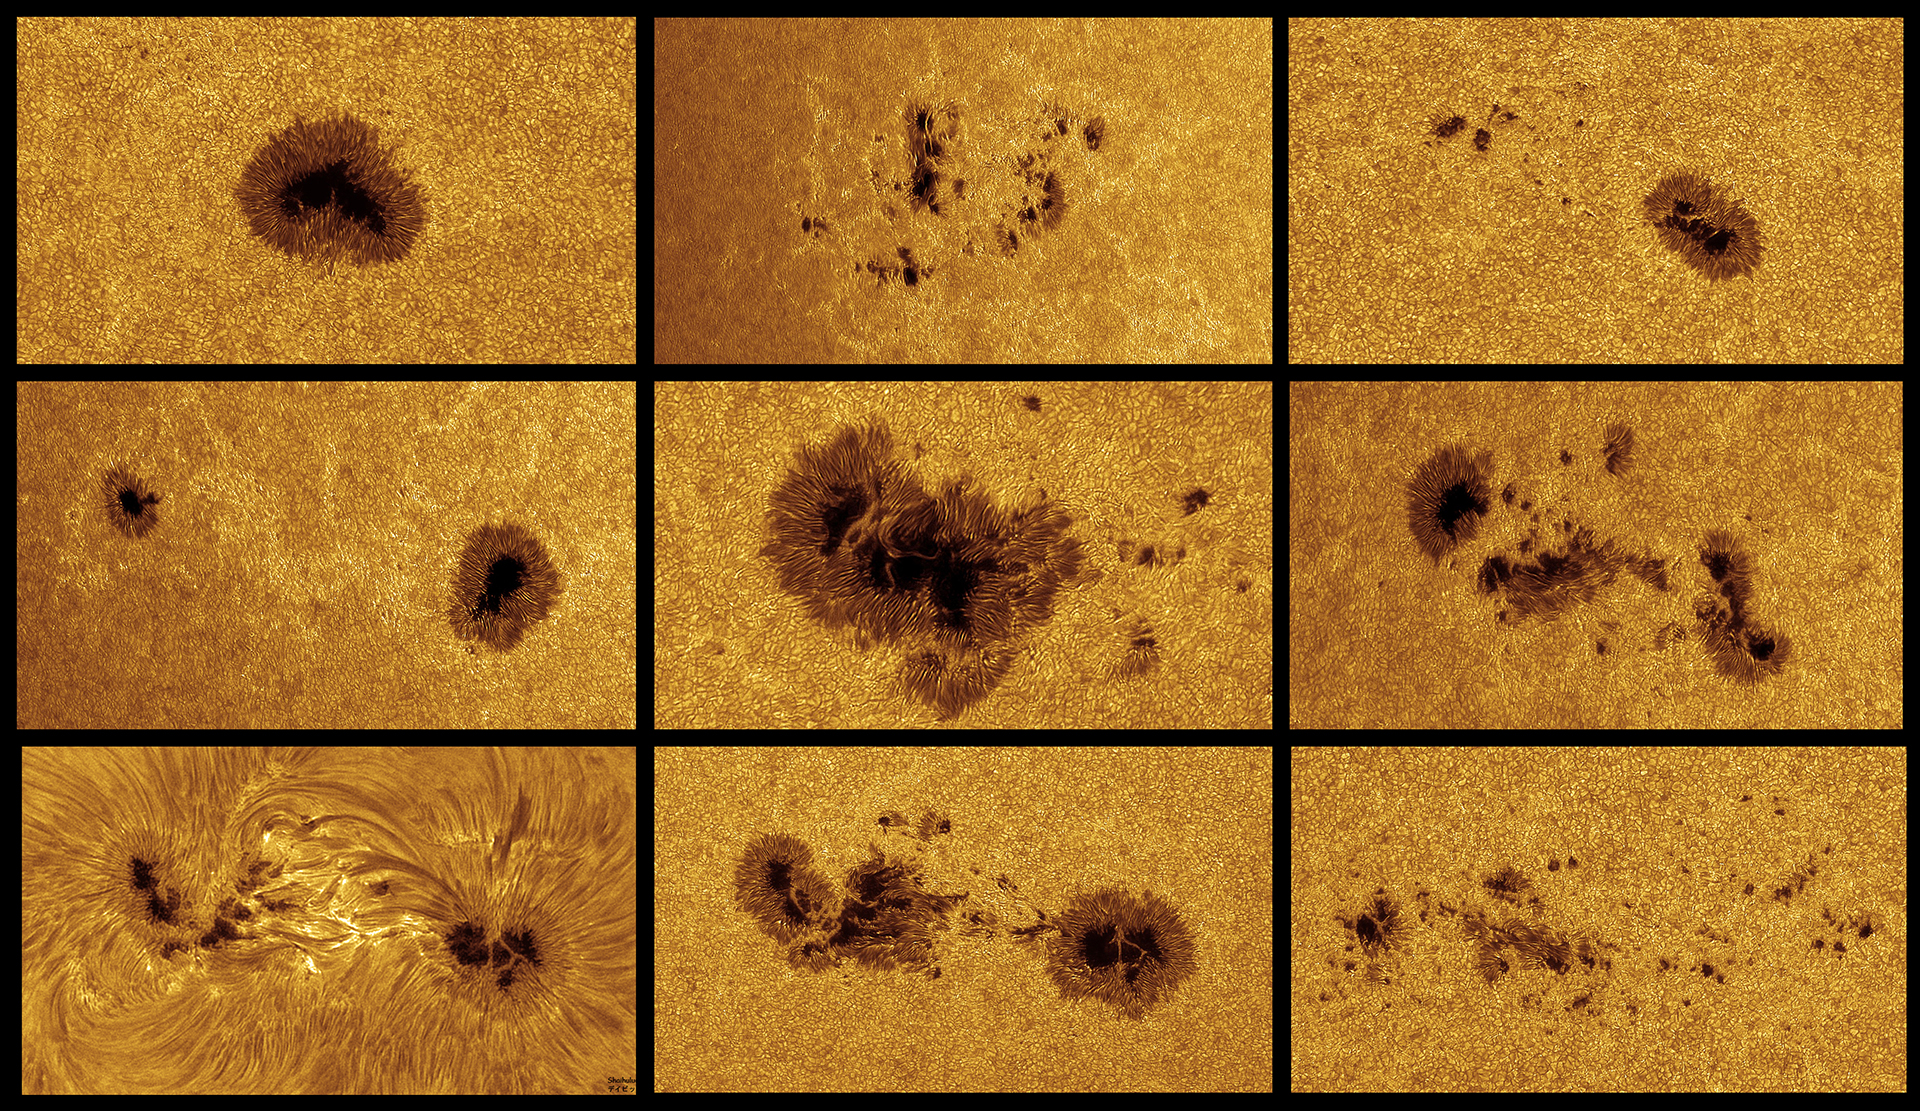 Juillet 2023 - Taches, granulation, "bright spots" et "filigrees" dans la photosphère solaire en haute résolution, par David "Shaihulud" Dominé